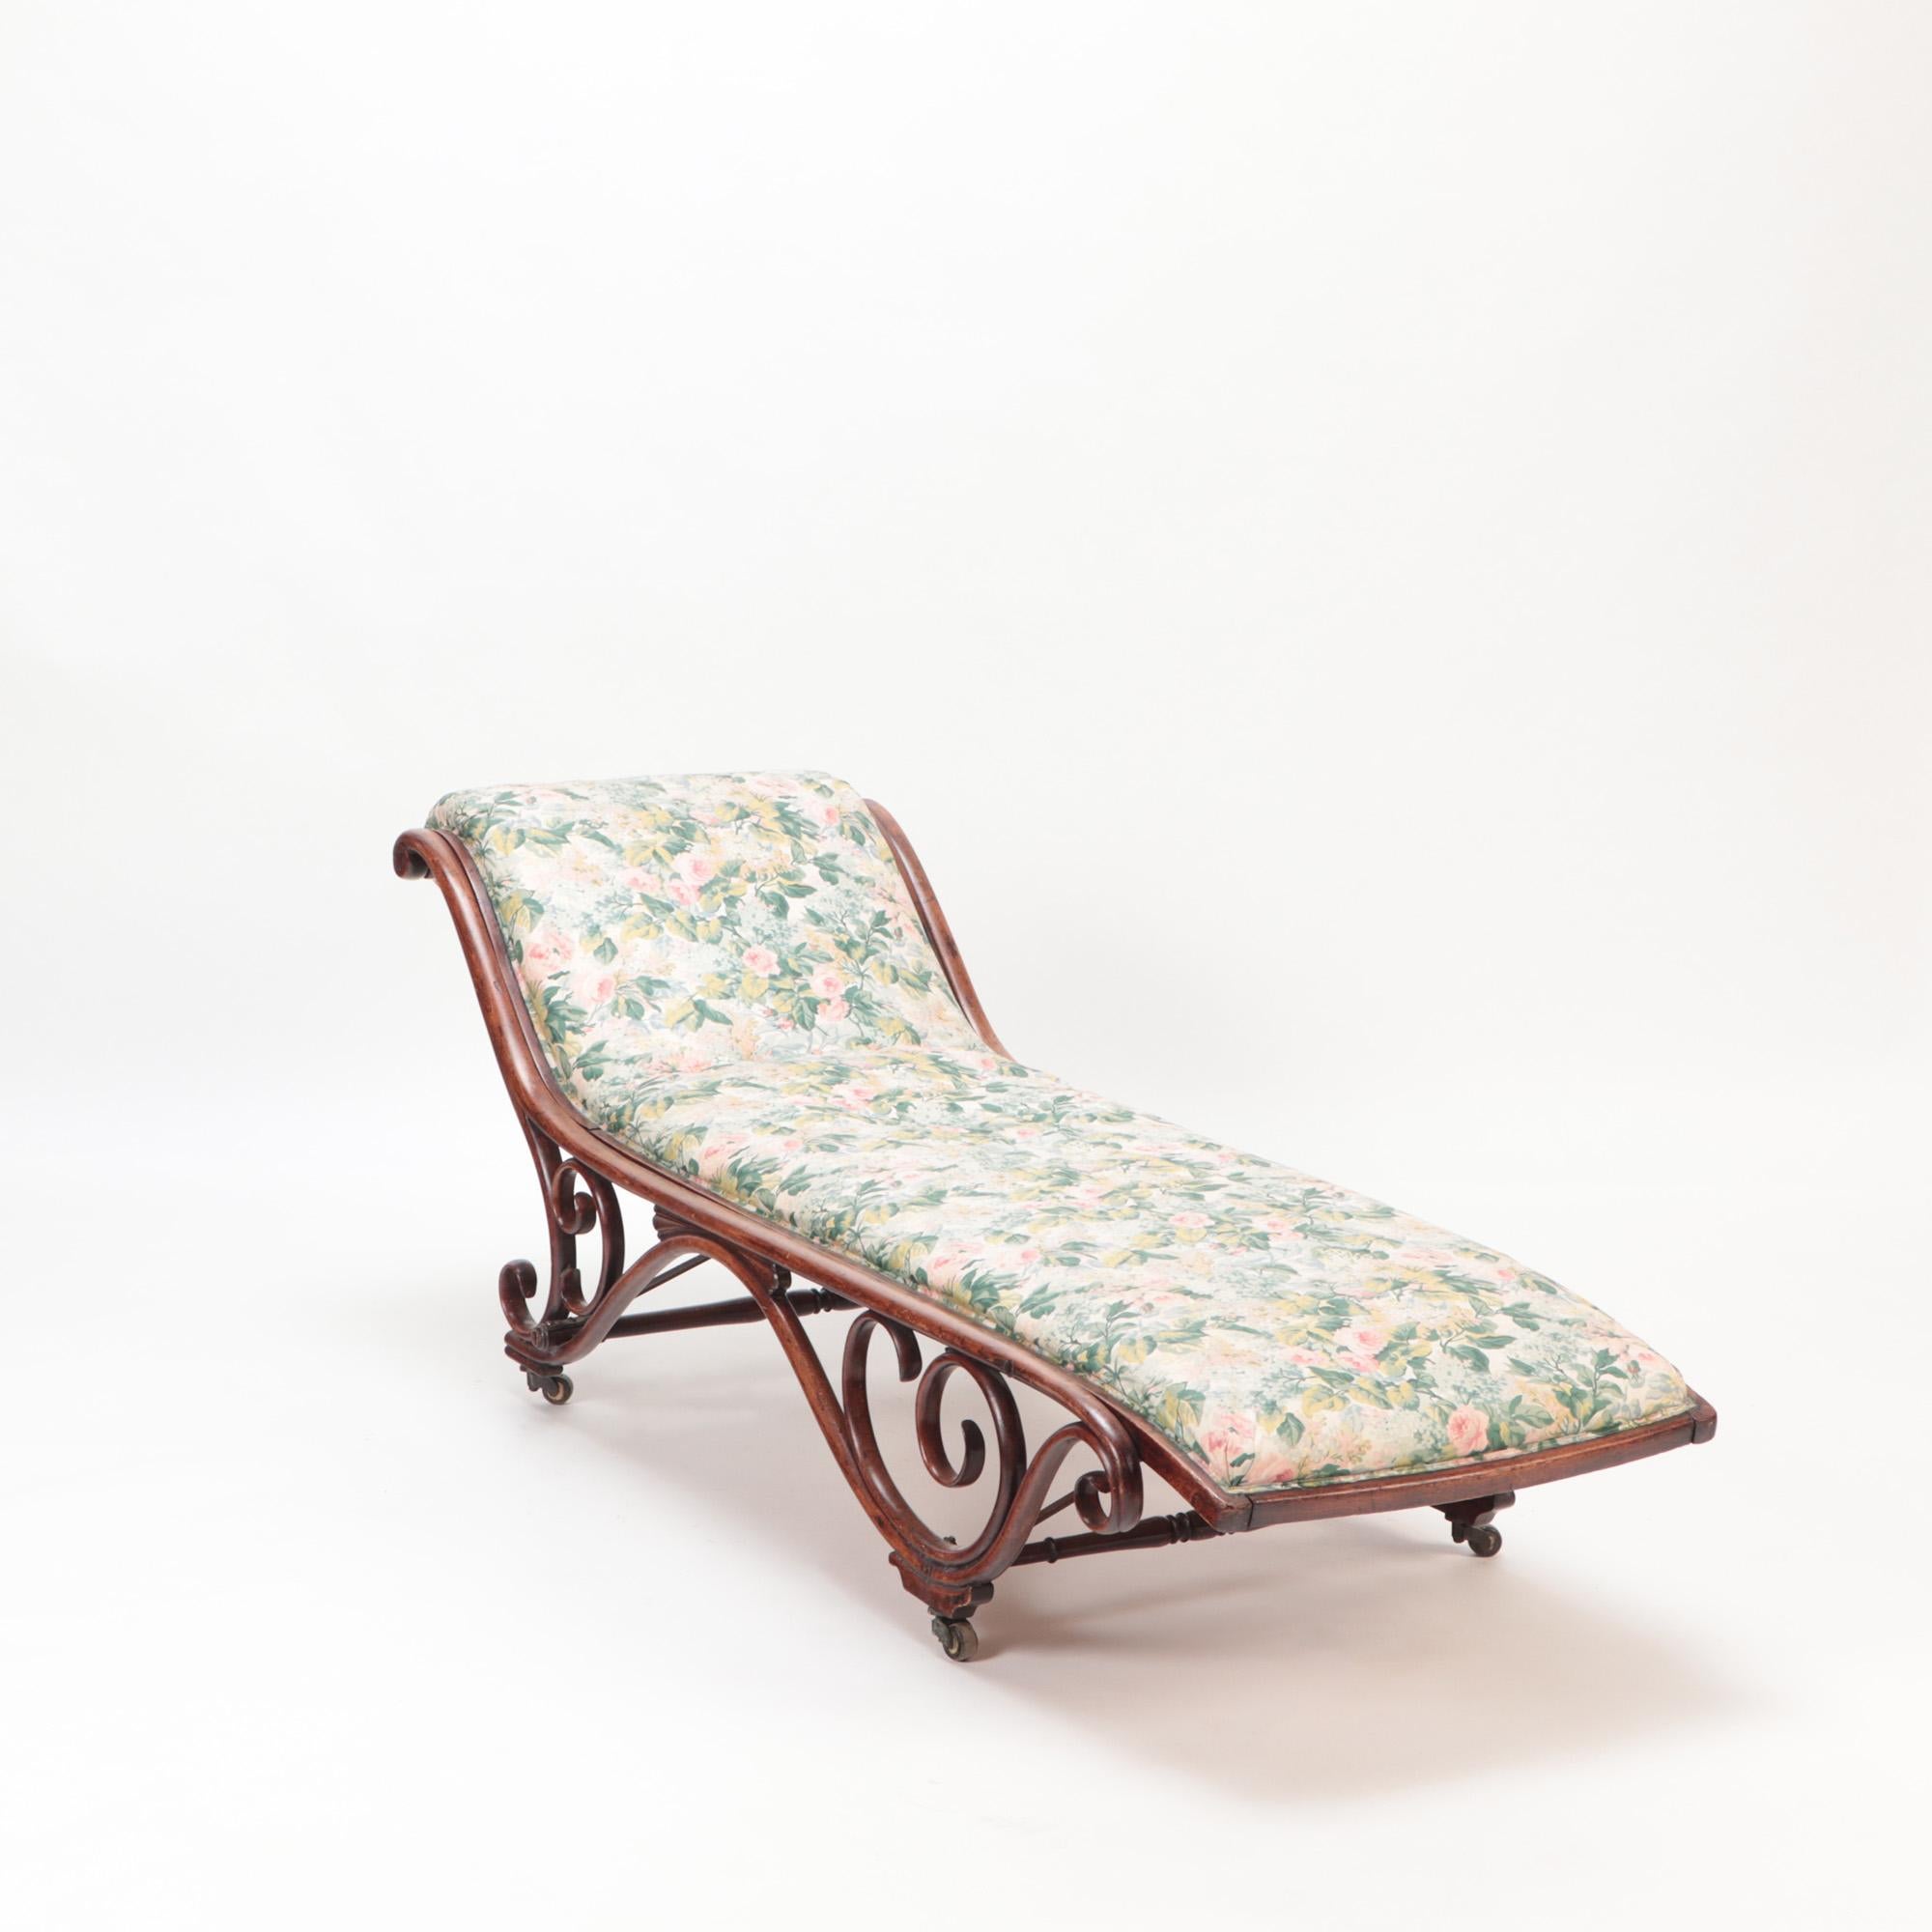 Chaise longue en bois courbé et rembourrée par Thonet vers 1900.